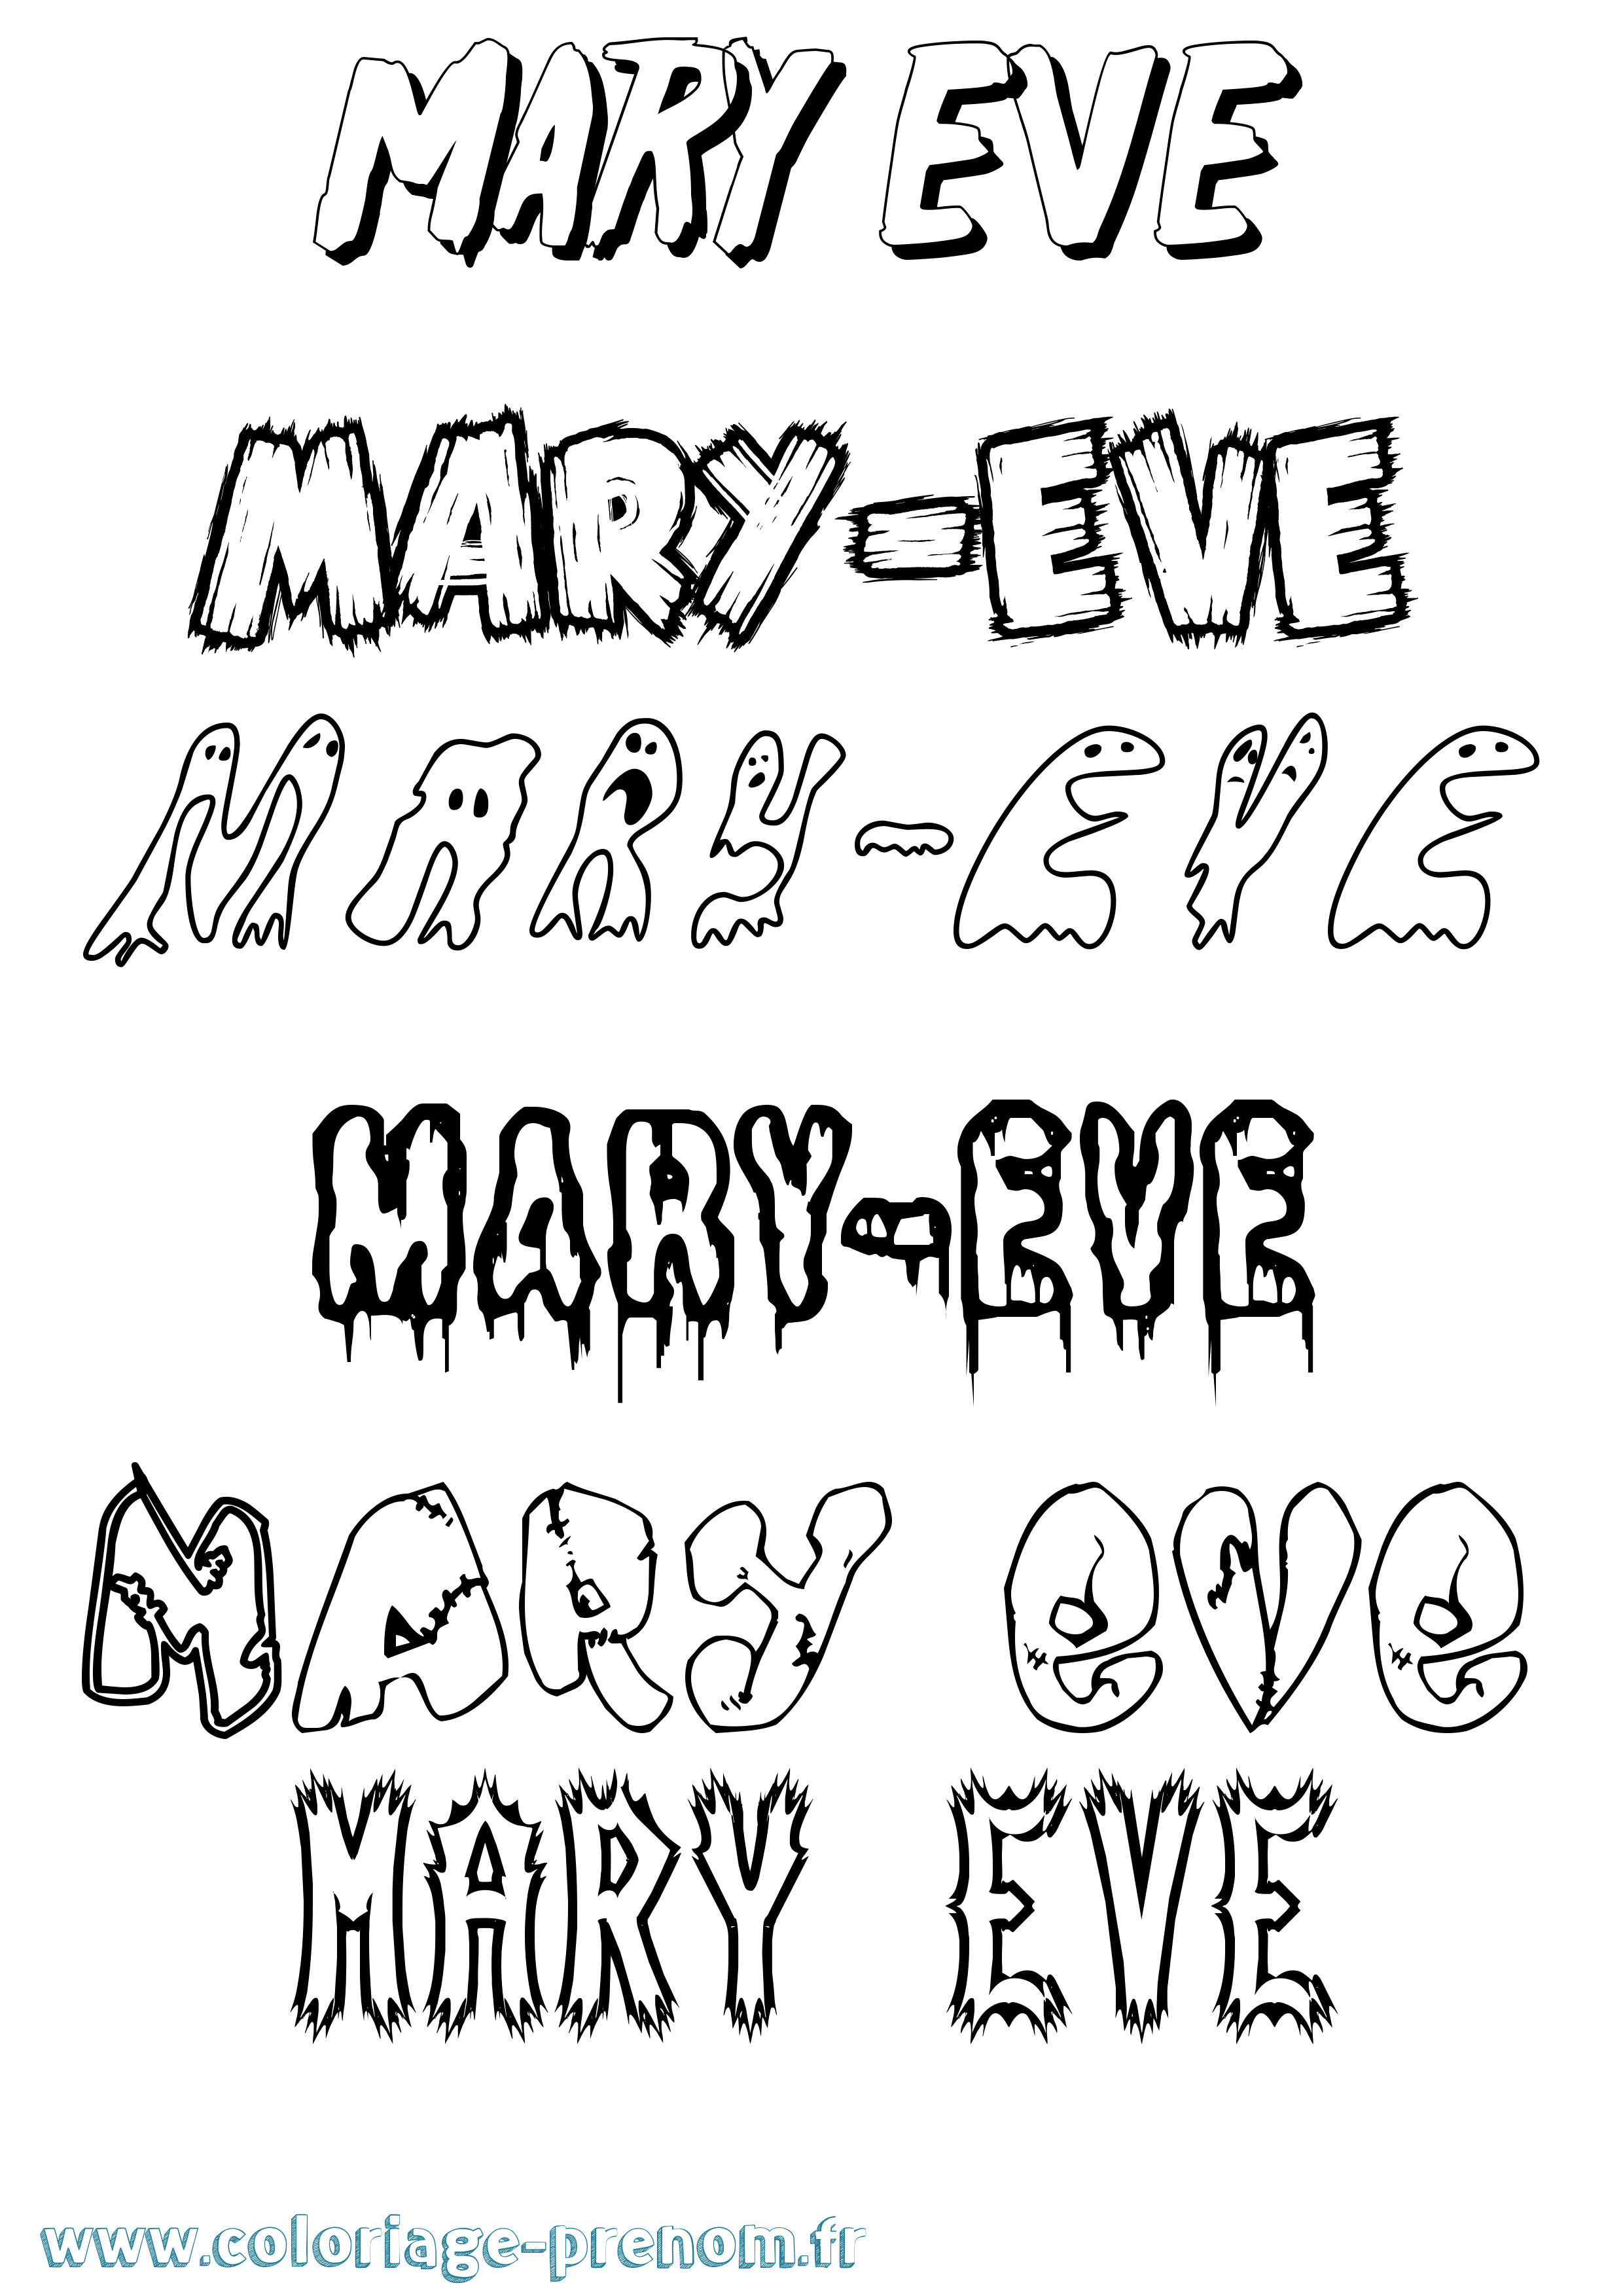 Coloriage prénom Mary-Eve Frisson